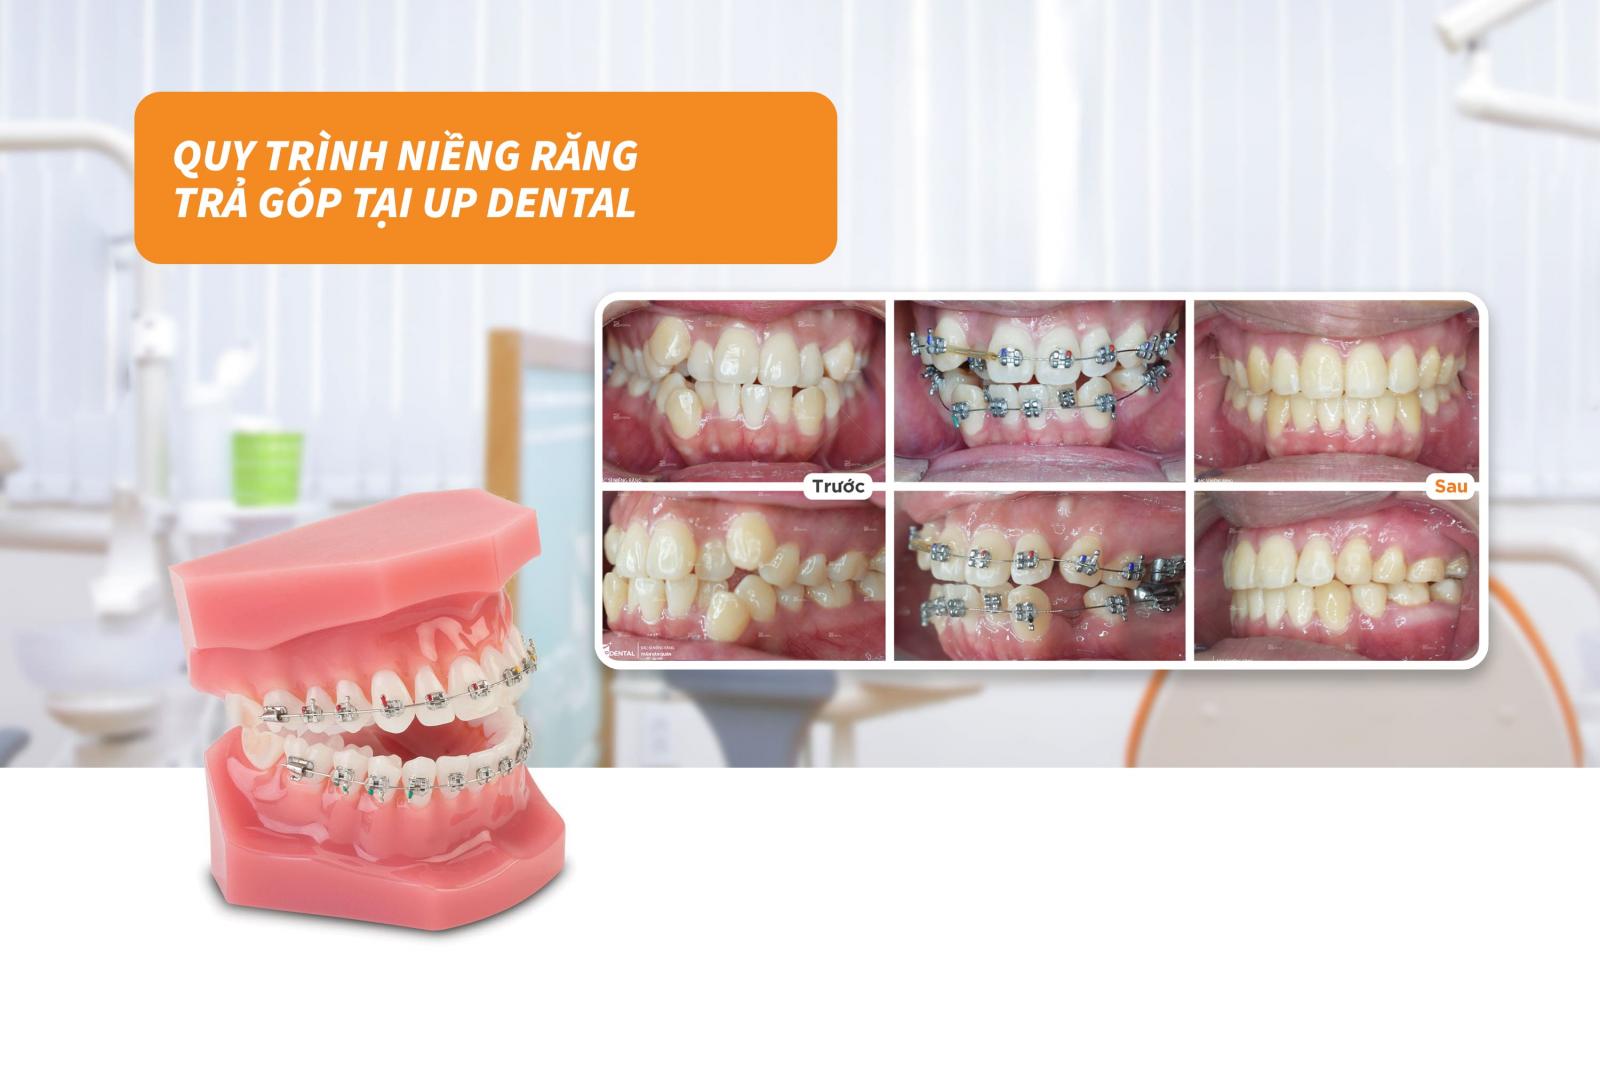 Quy trình niềng răng trả góp tại Up Dental 